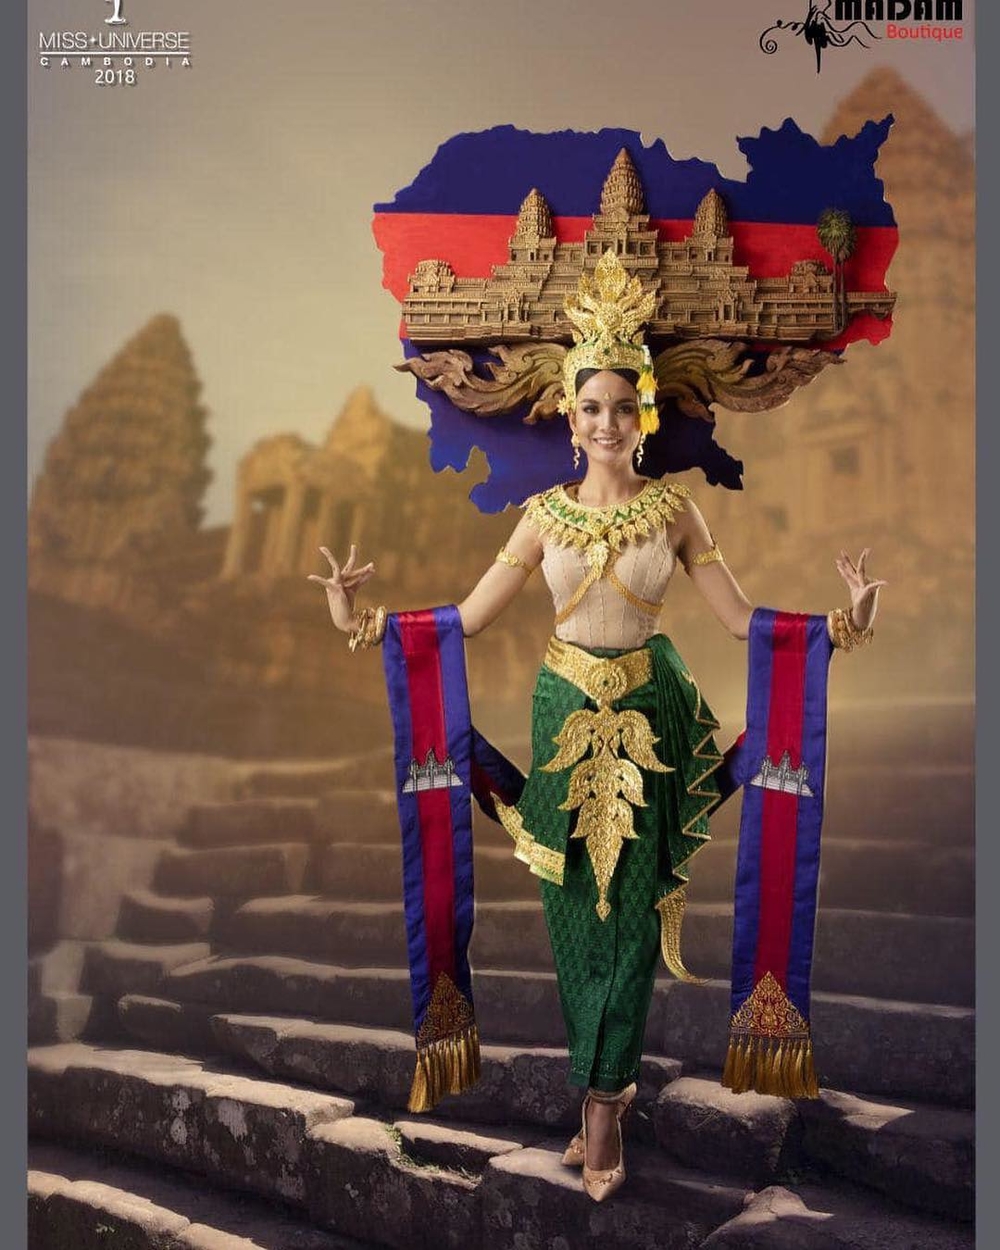 
Bộ trang phục mang đậm nét văn hóa của Campuchia với những chi tiết đền thờ.